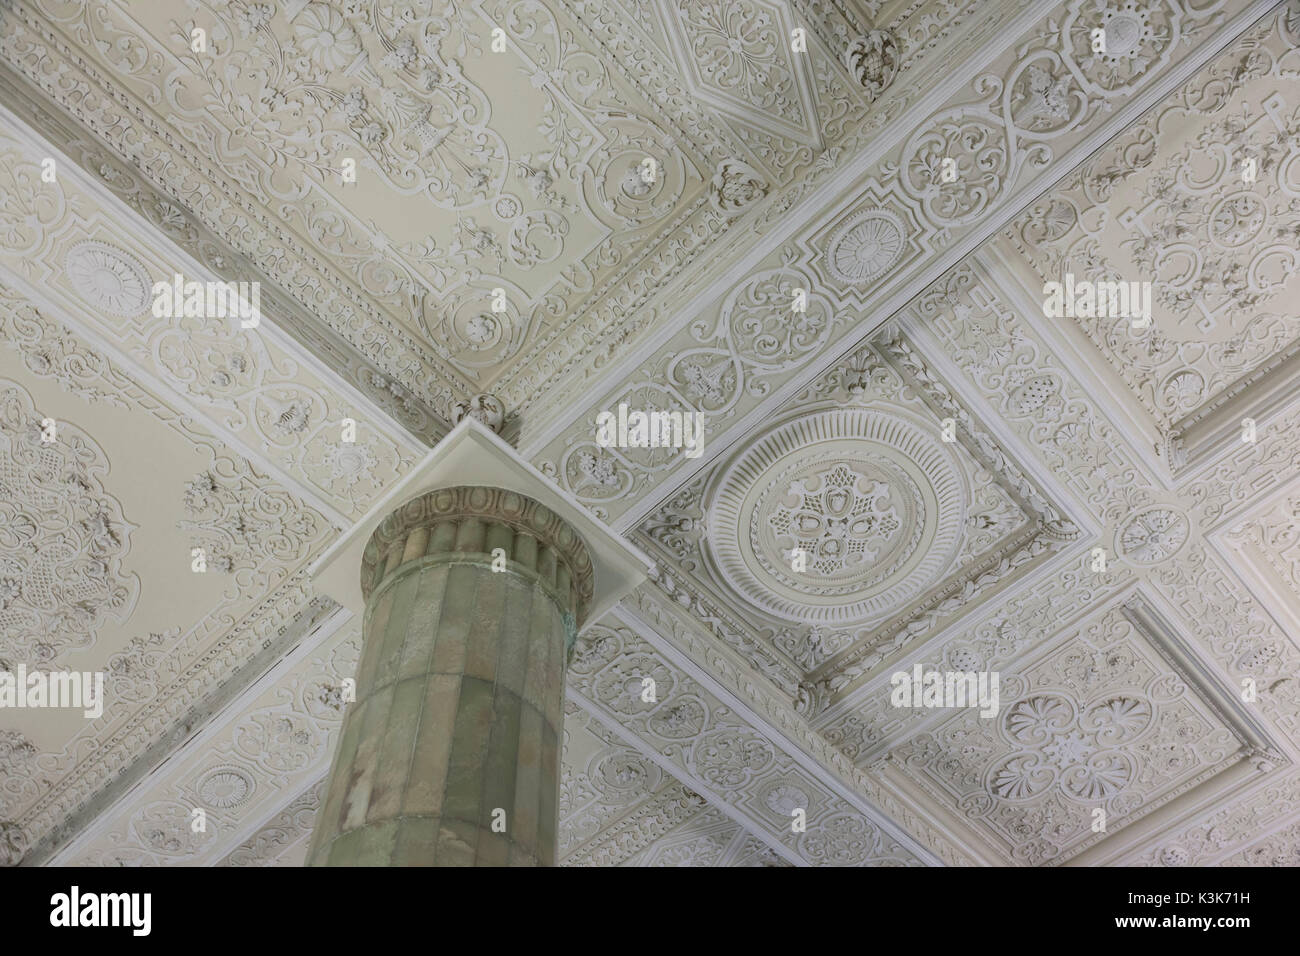 Iran, Teheran, Sa'dAbad Palace Complex, königliche Sommerresidenz während der pahlavizeit, White Palace, der Palast der Nation, Decke Stockfoto